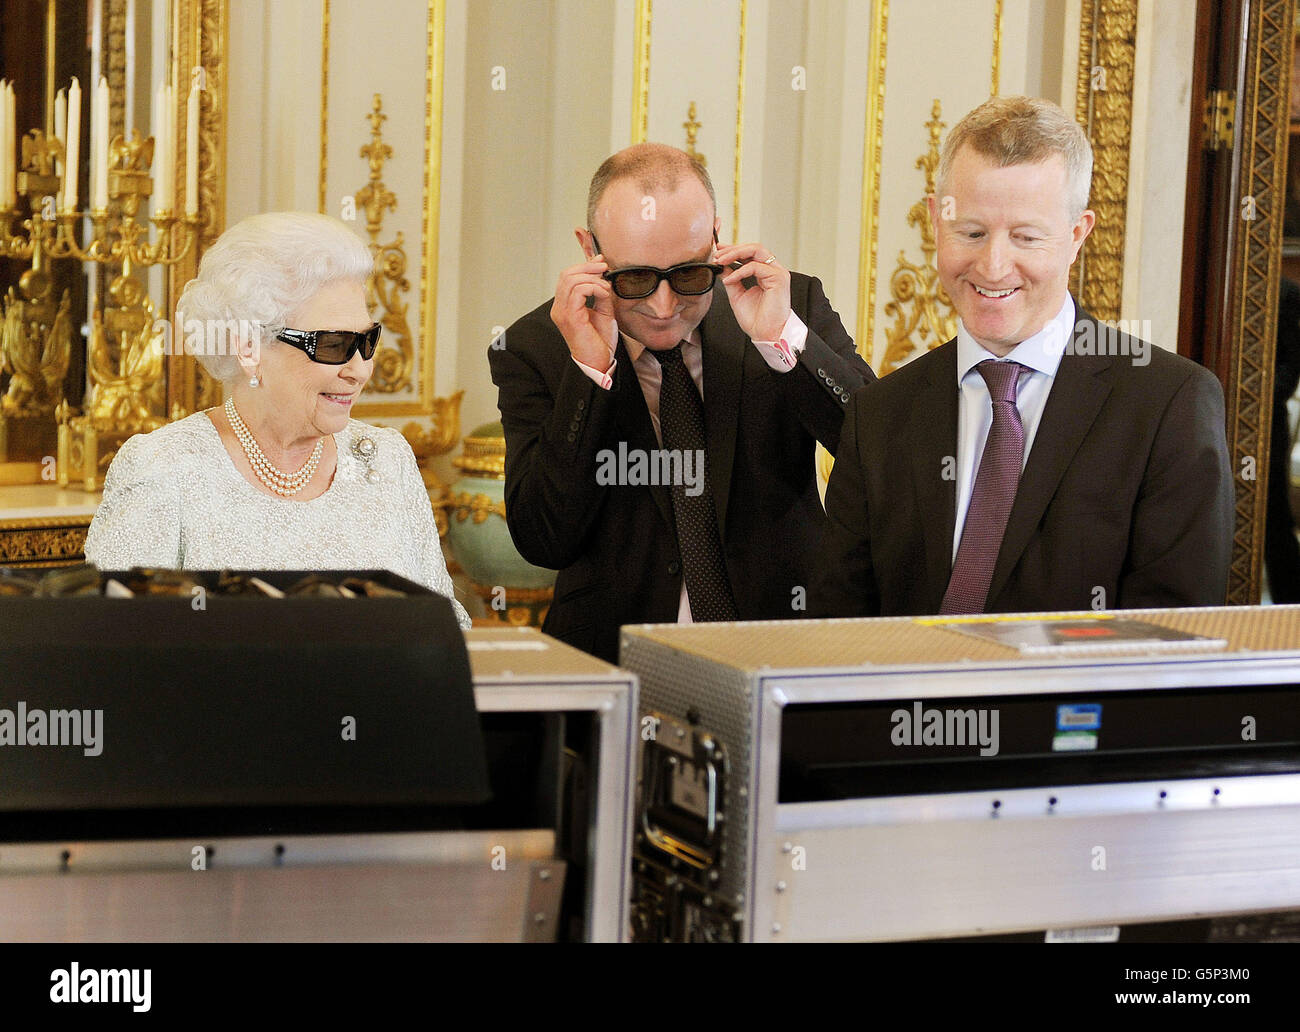 La reina Elizabeth II con el productor John McAndrew y el director John Bennett (derecha), en la sala de dibujo blanca del Palacio de Buckingham en el centro de Londres, mientras observan la grabación de su mensaje navideño a la Commonwealth que se transmitirá por primera vez en 3D. Foto de stock